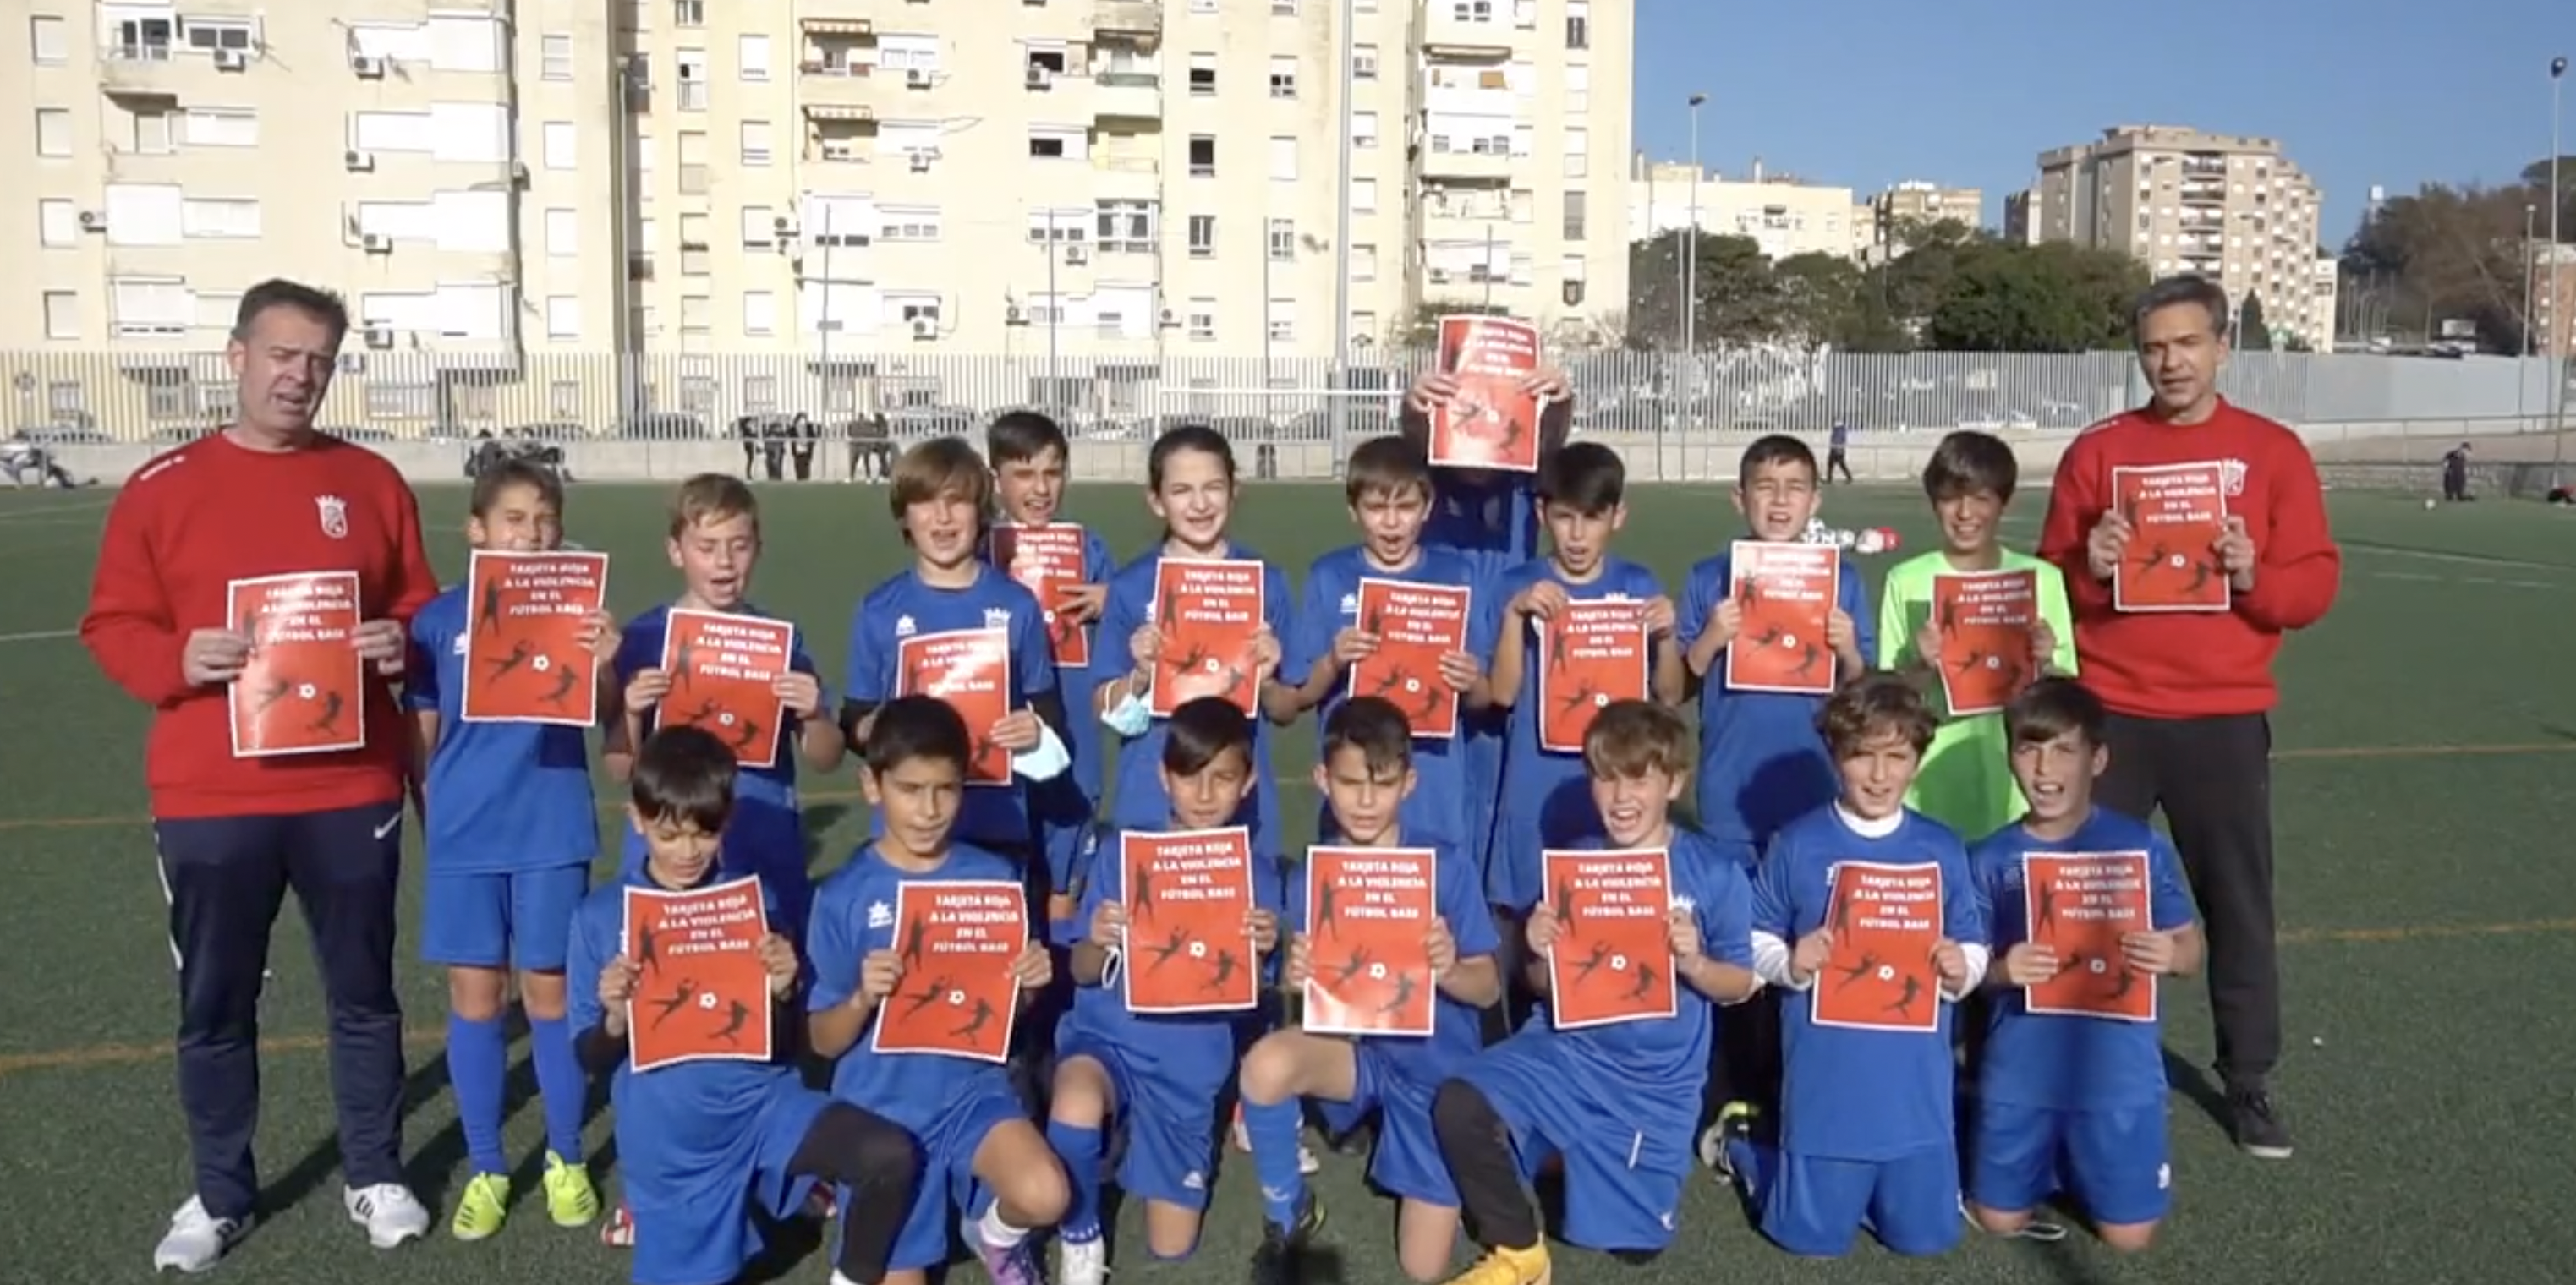 'Tarjeta roja a la violencia en el fútbol base': la cantera del Xerez CD manda un mensaje de respeto y compañerismo.